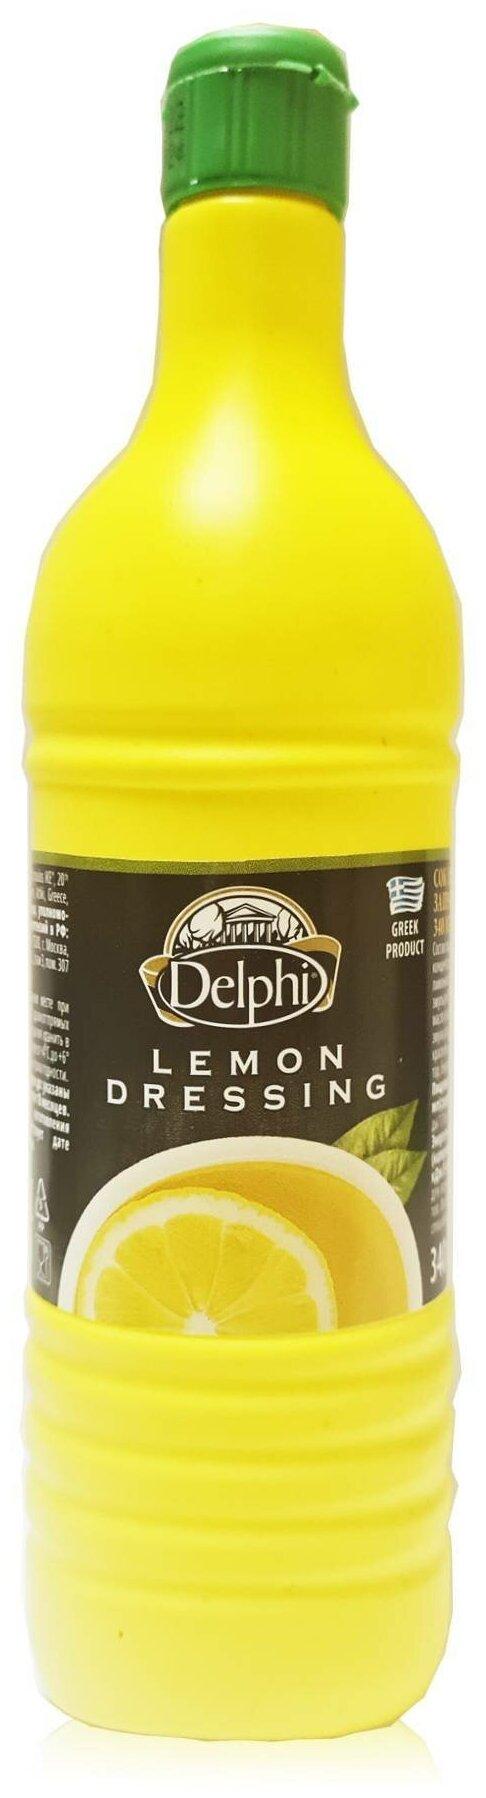 Сок Delphi лимонный заправка 340 мл., ПЭТ